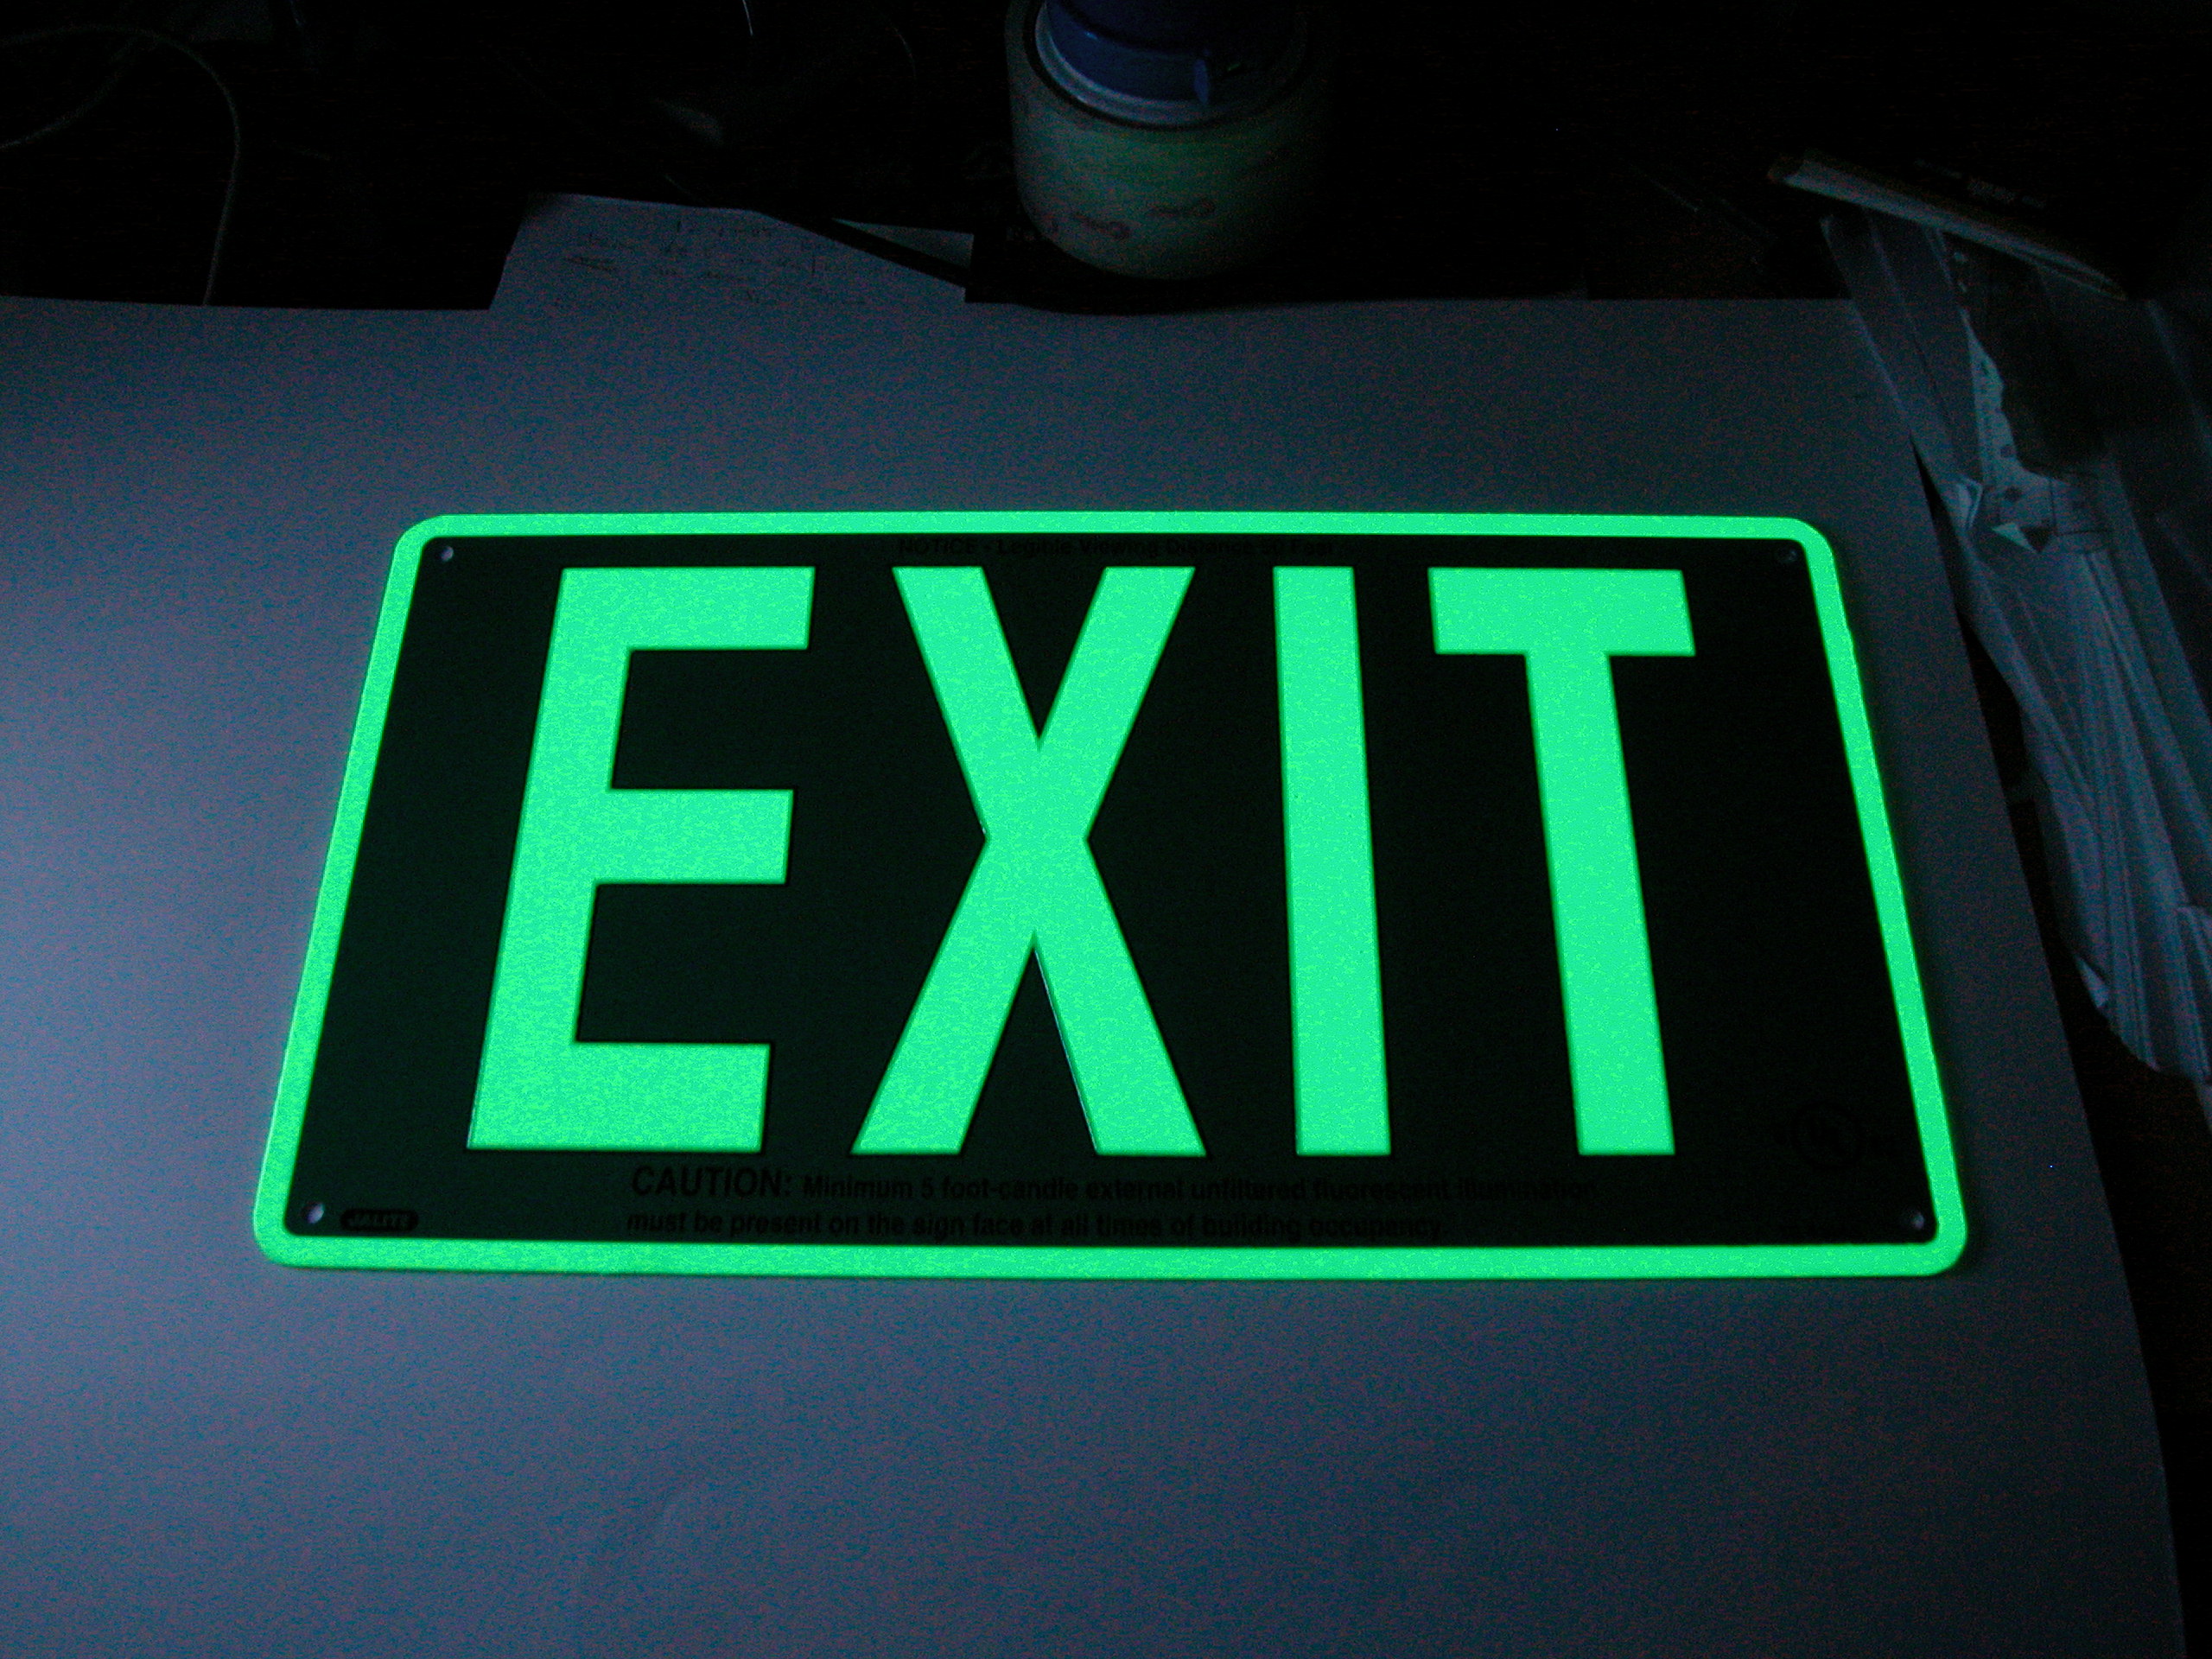 Fire Exit photoluminescence jalite SIGNE 300x100 sécurité incendie en plastique